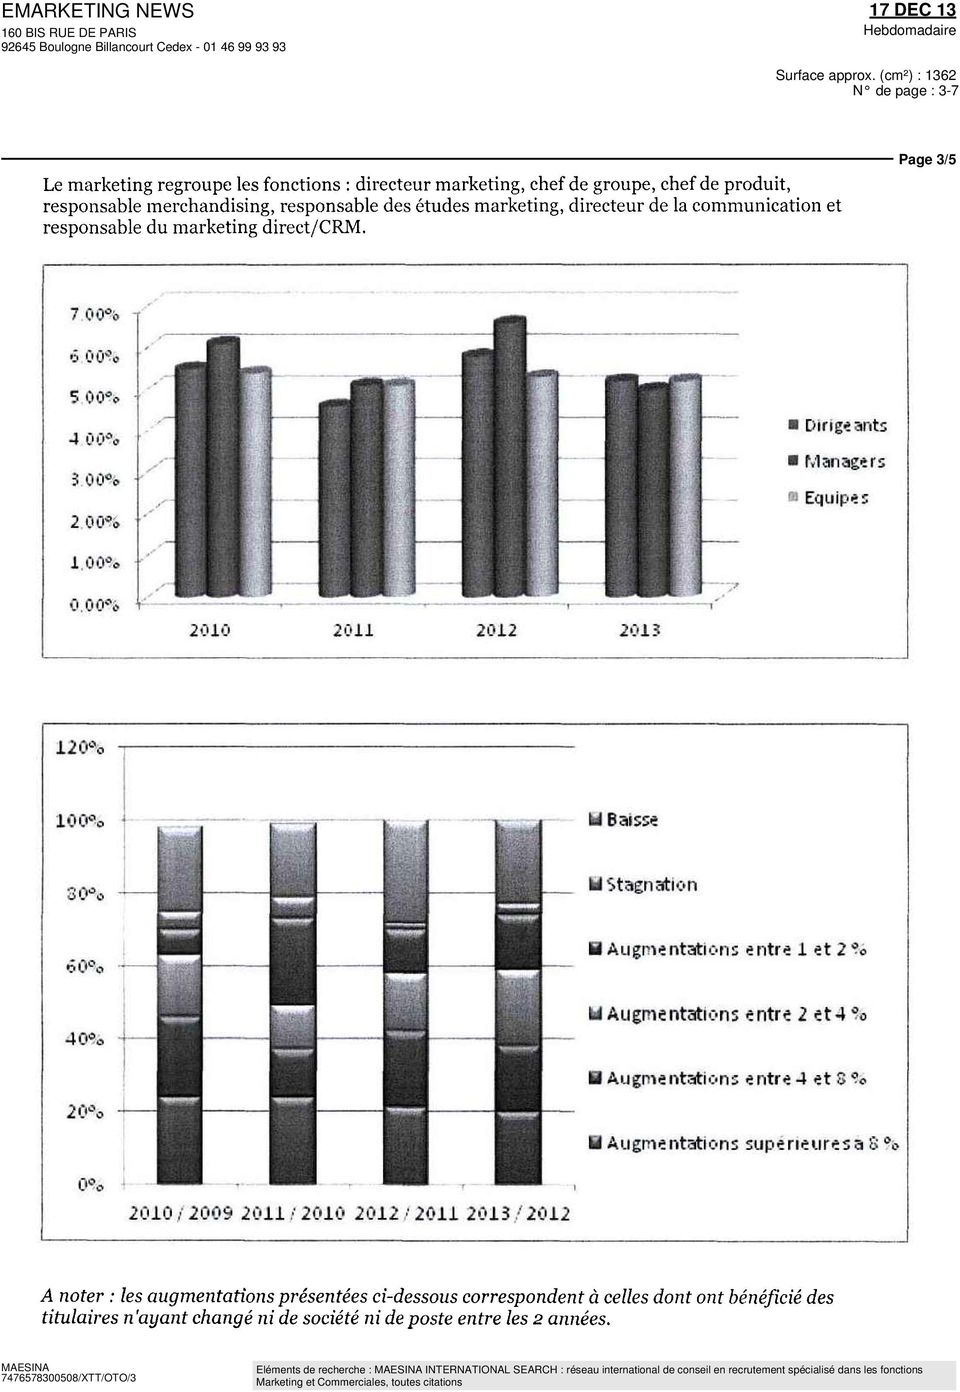 80% M Stagnation 00% 40% 20% B Augentations entre I et 2% M Augentations entre 2 et4% fl Augentation; entre 4 et 3 % Augentations supérieures a 8 % 0% 20101 2009 2011